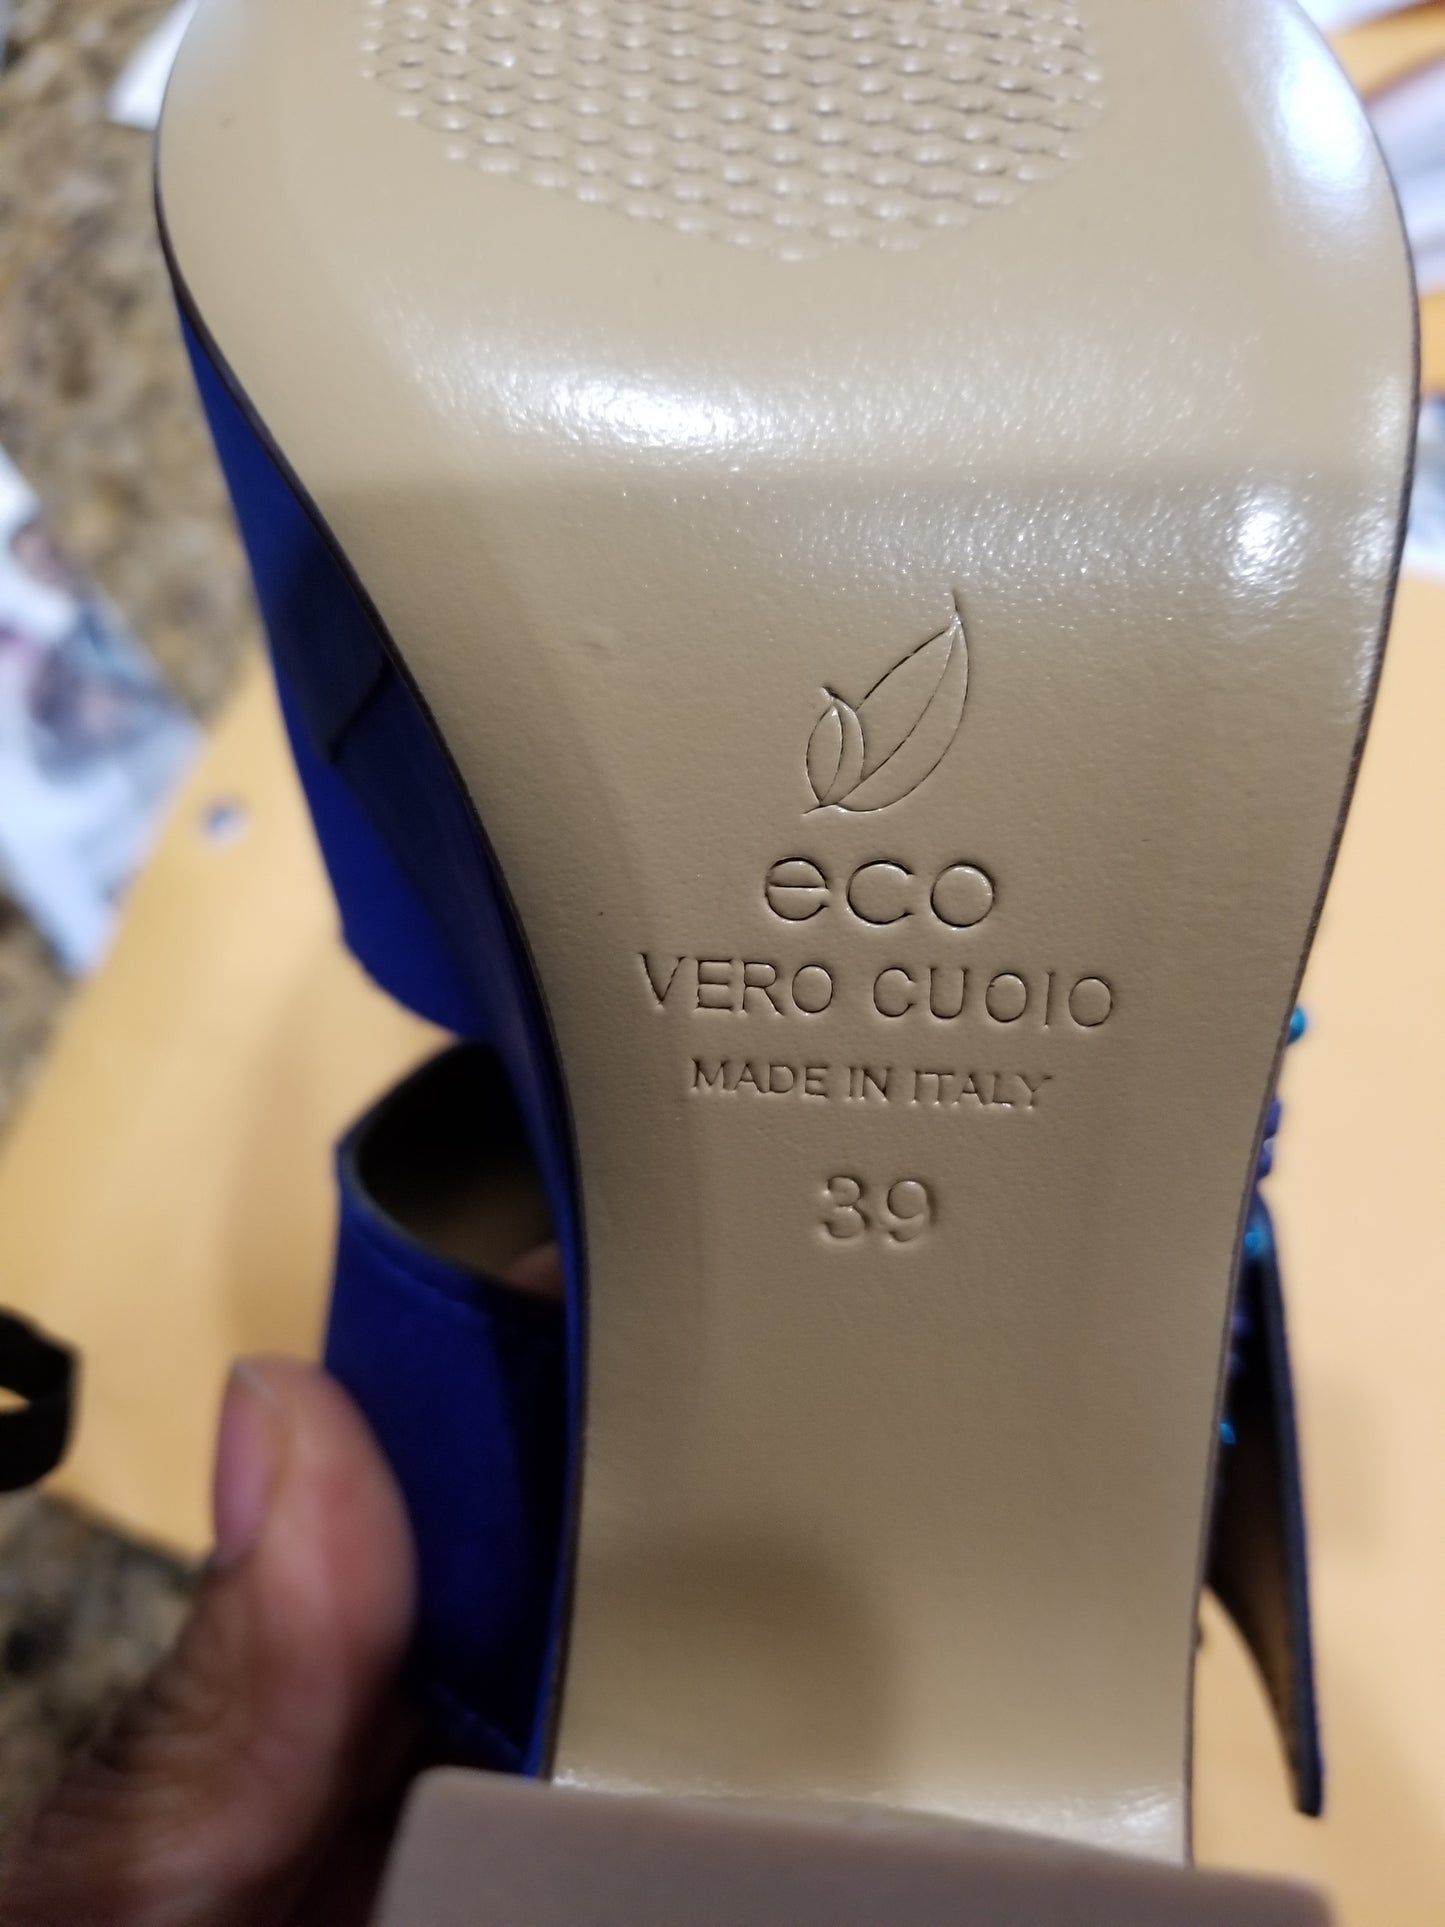 Ausverkauf, Ausverkauf Königsblaue, in Italien hergestellte Plateau-Sandale/Schuh. Sandale mit seitlicher Schnalle, Größe 39. Original italienischer Lederschuh. 4-Zoll-Absatz, Kristallsteindesign